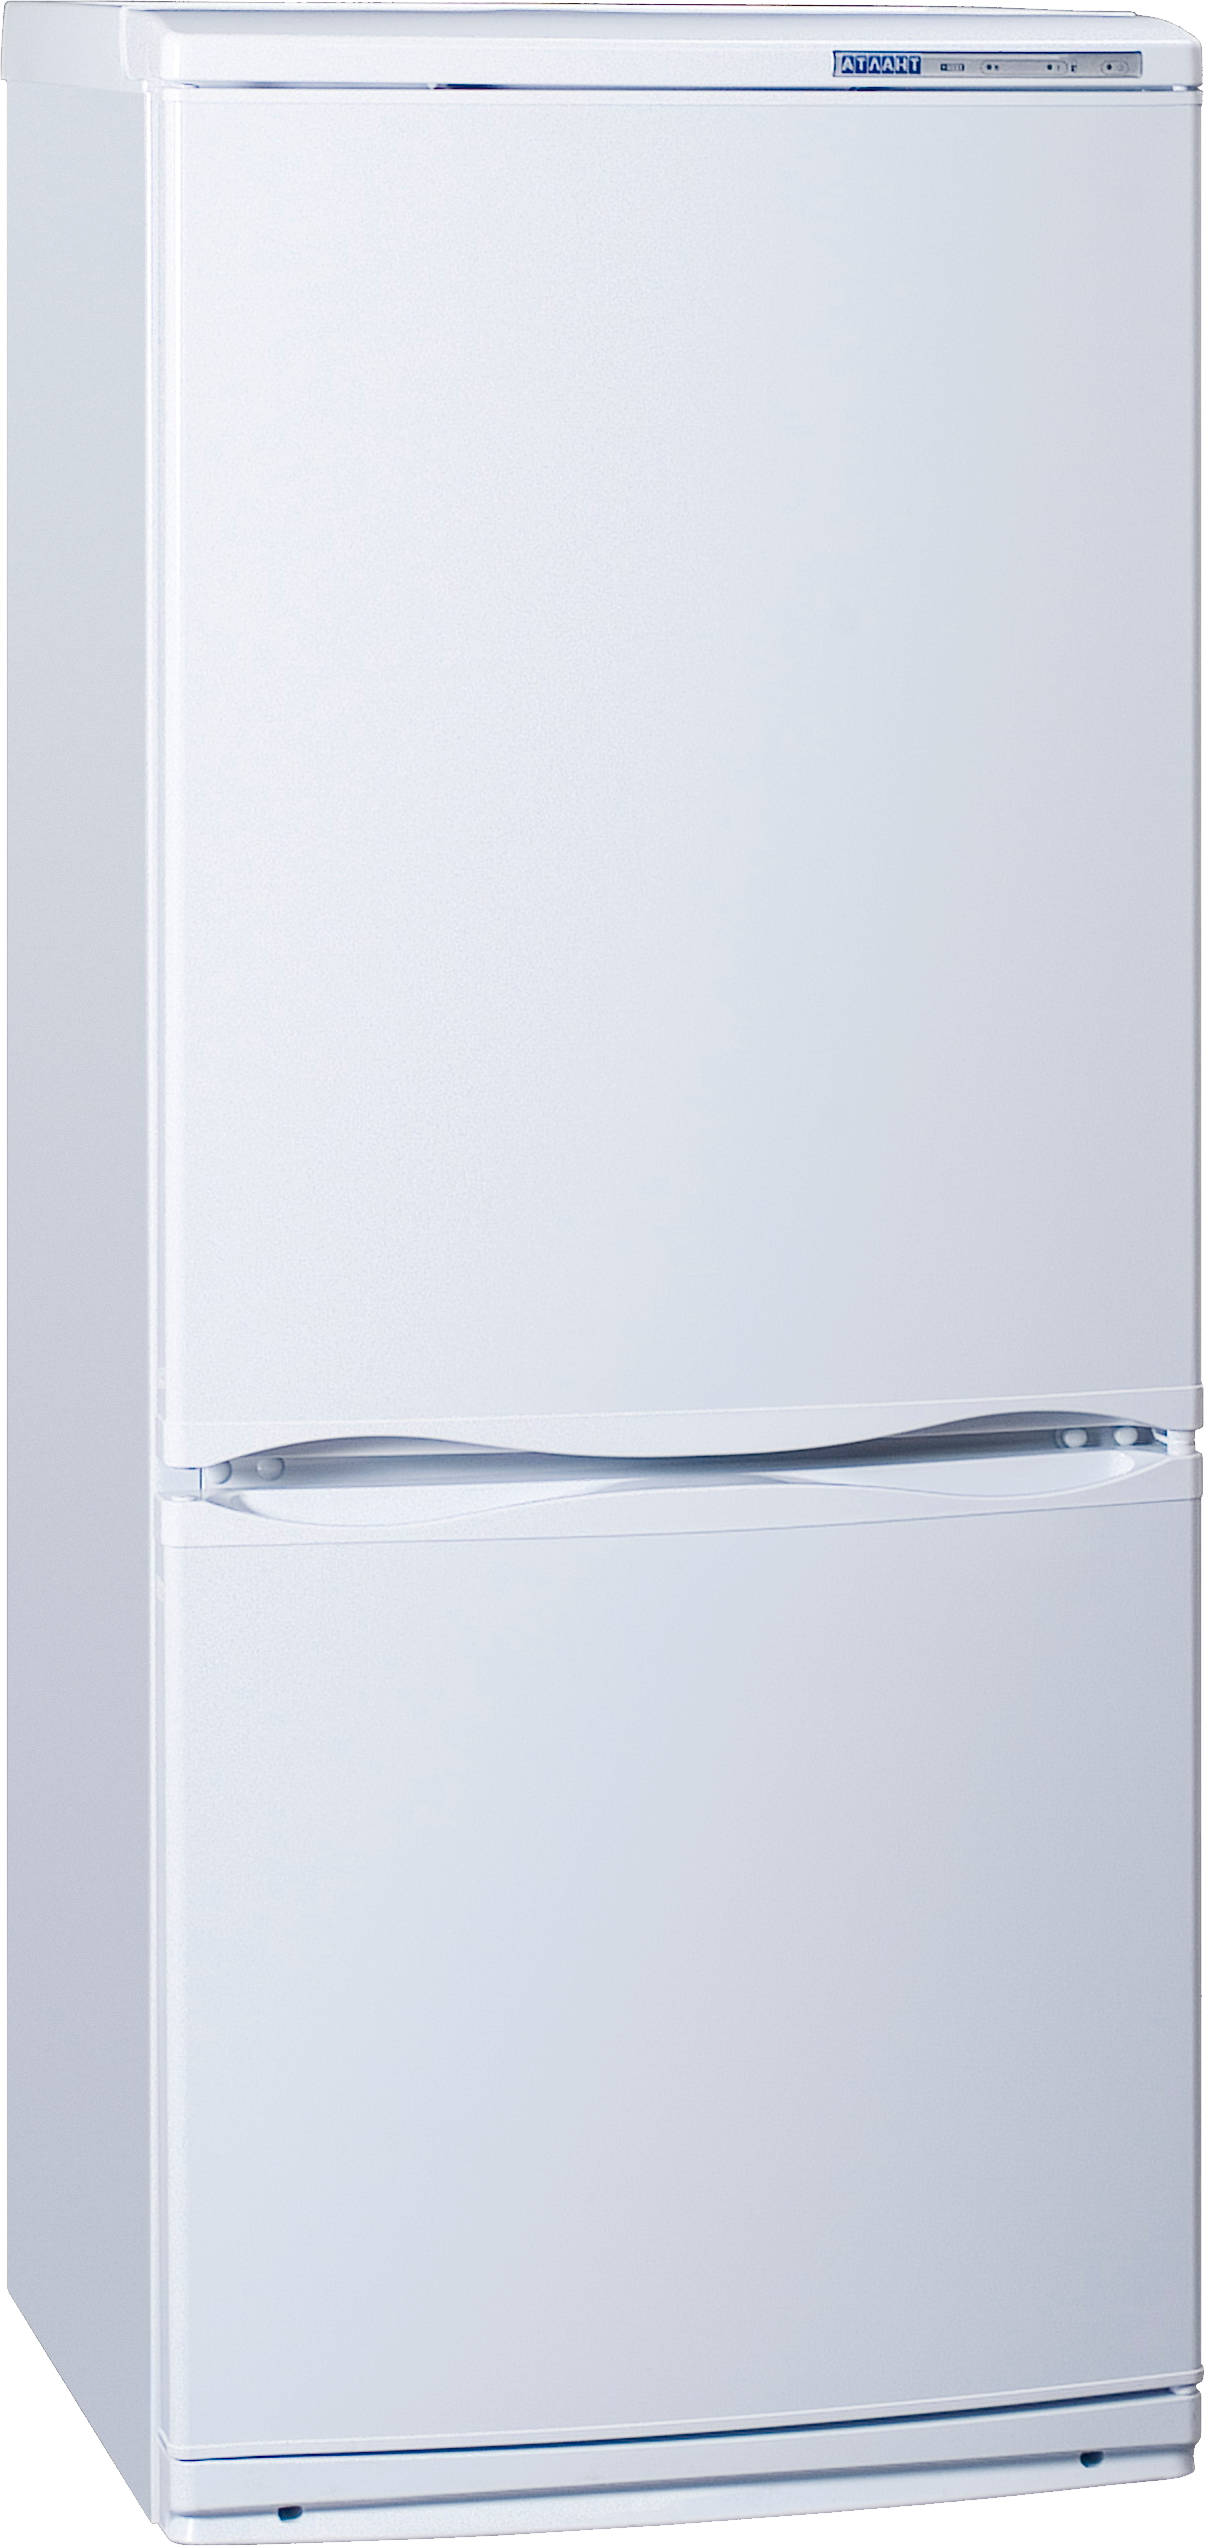 Купить новый холодильник атлант. ATLANT хм 6023-031. Холодильник Атлант 4009-022. Холодильник ATLANT хм 4008-022. Холодильник XM 4010-022 ATLANT.